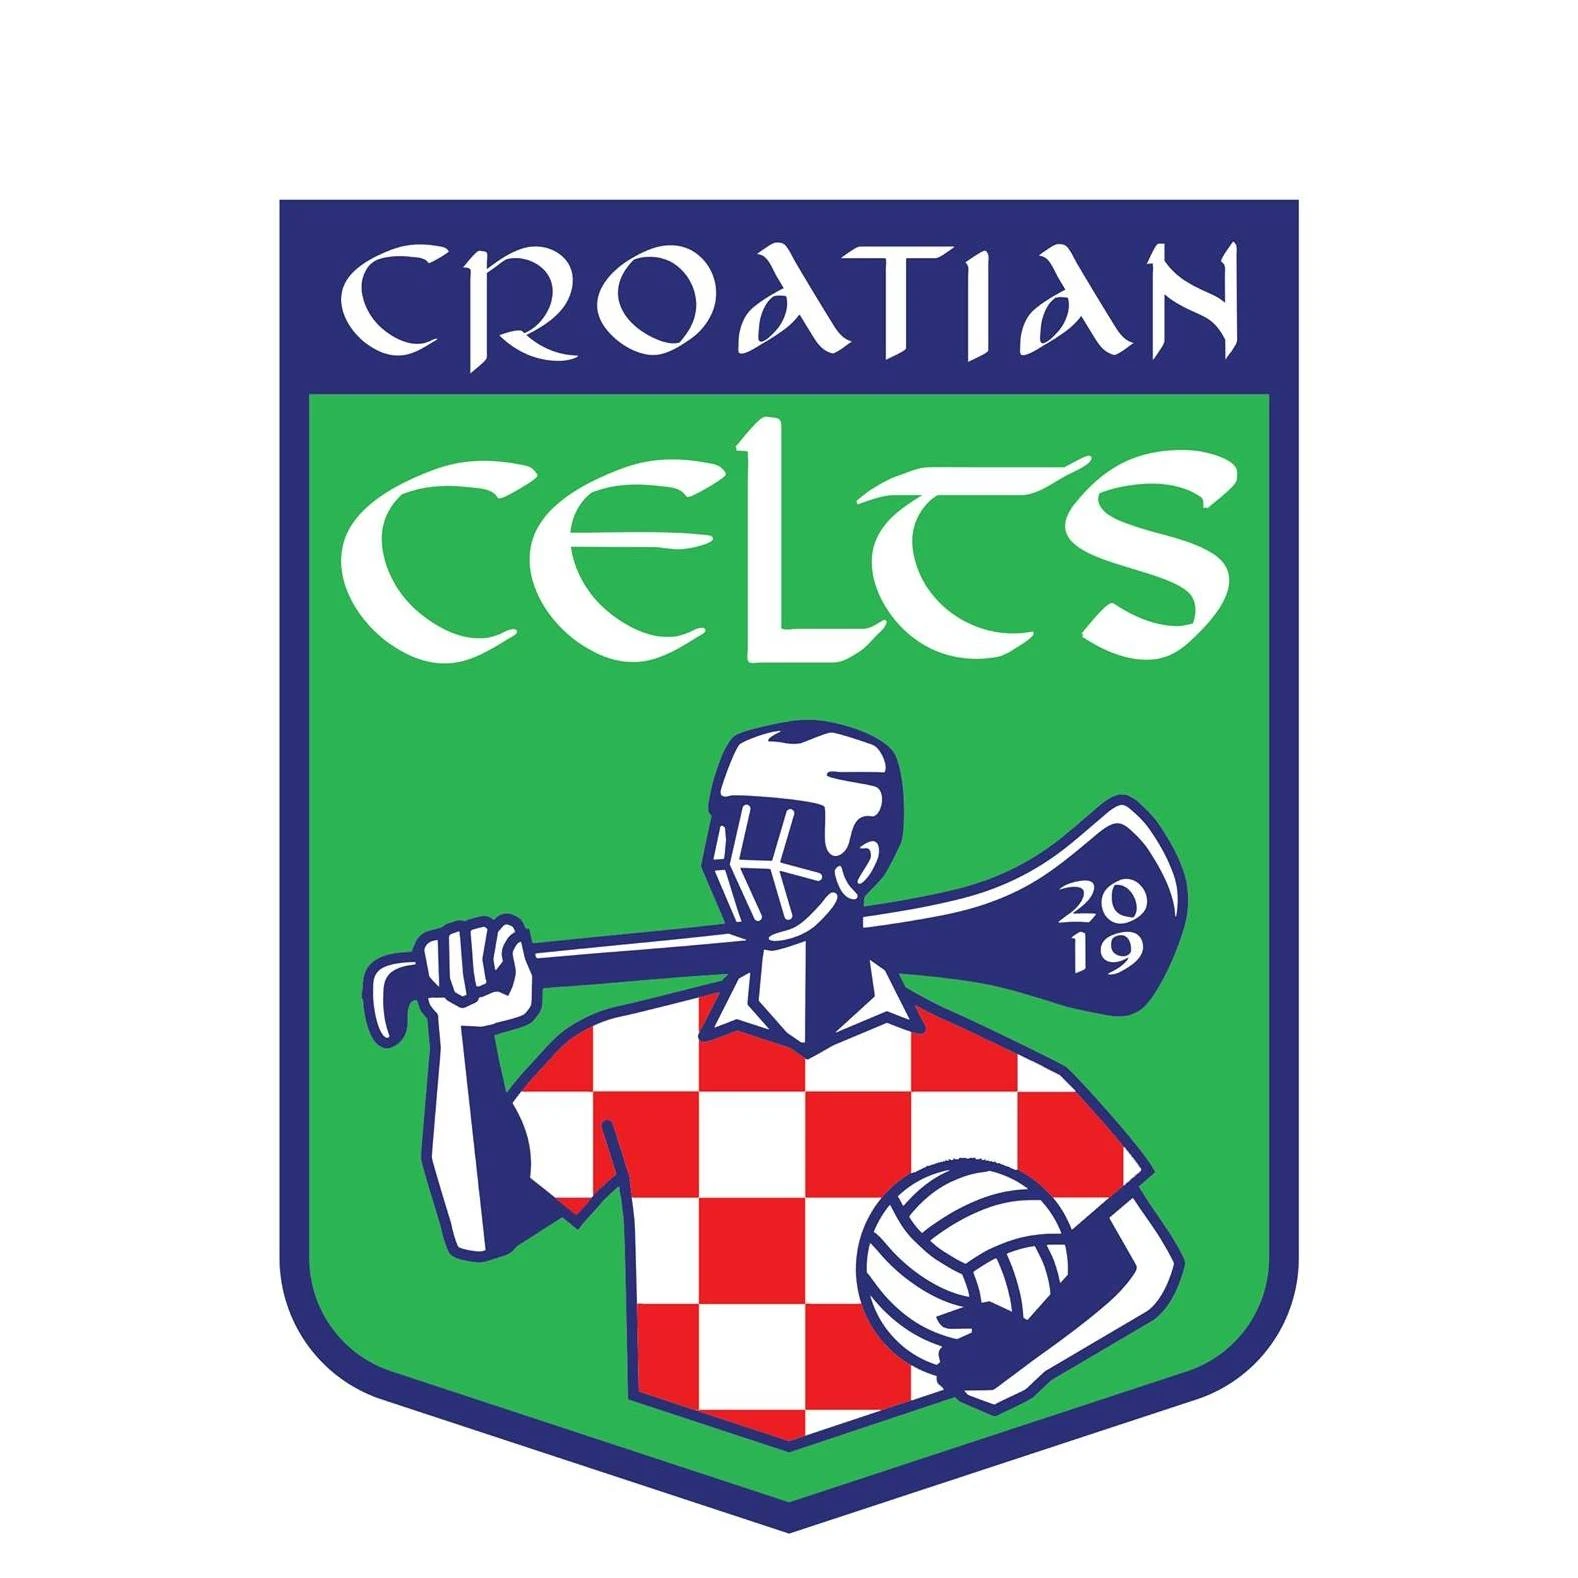 Croatian Celts